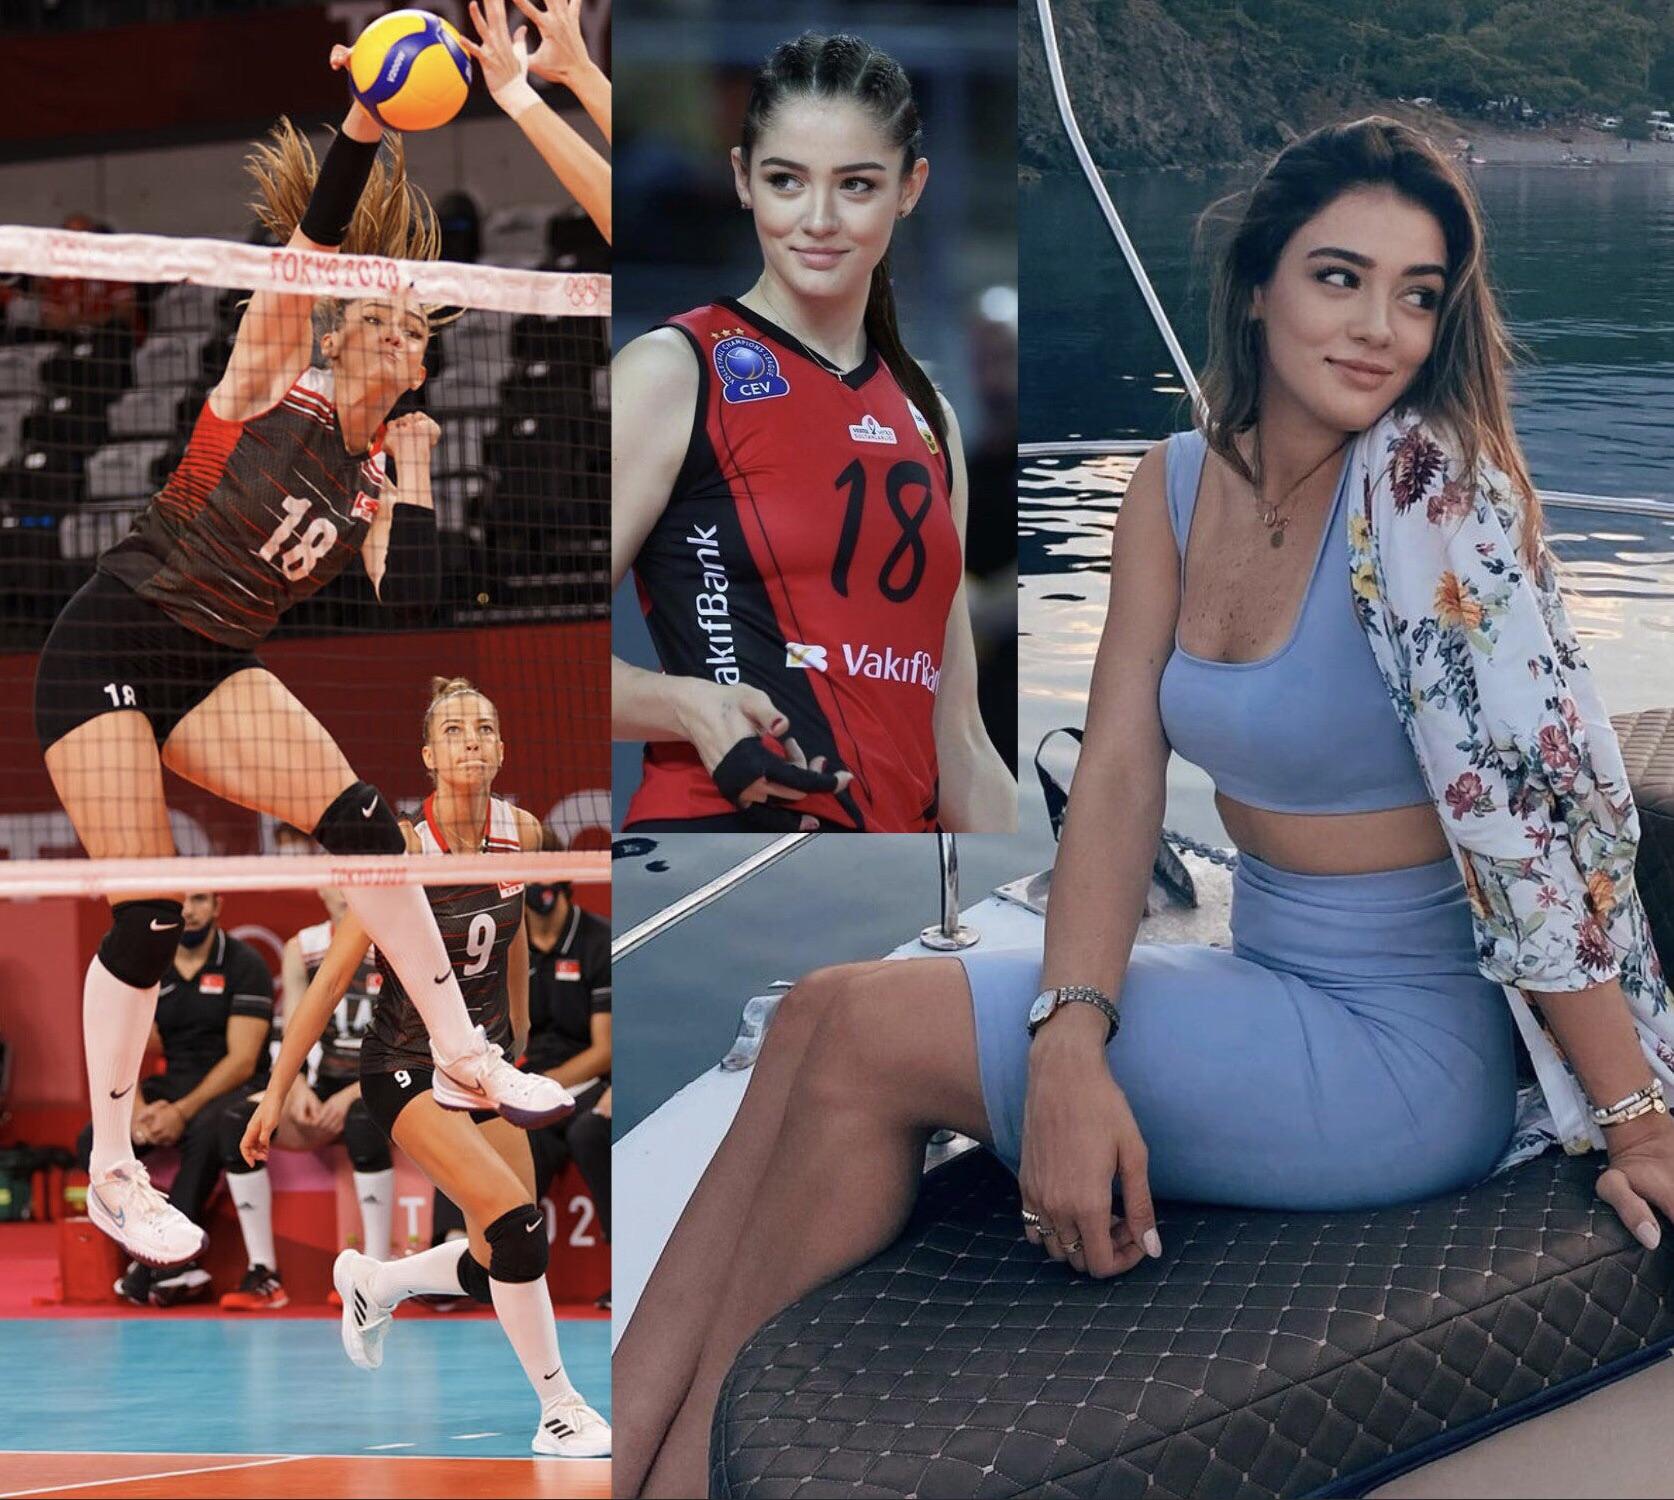 La volleyeuse turque Zehra Gunes mesure 1m80